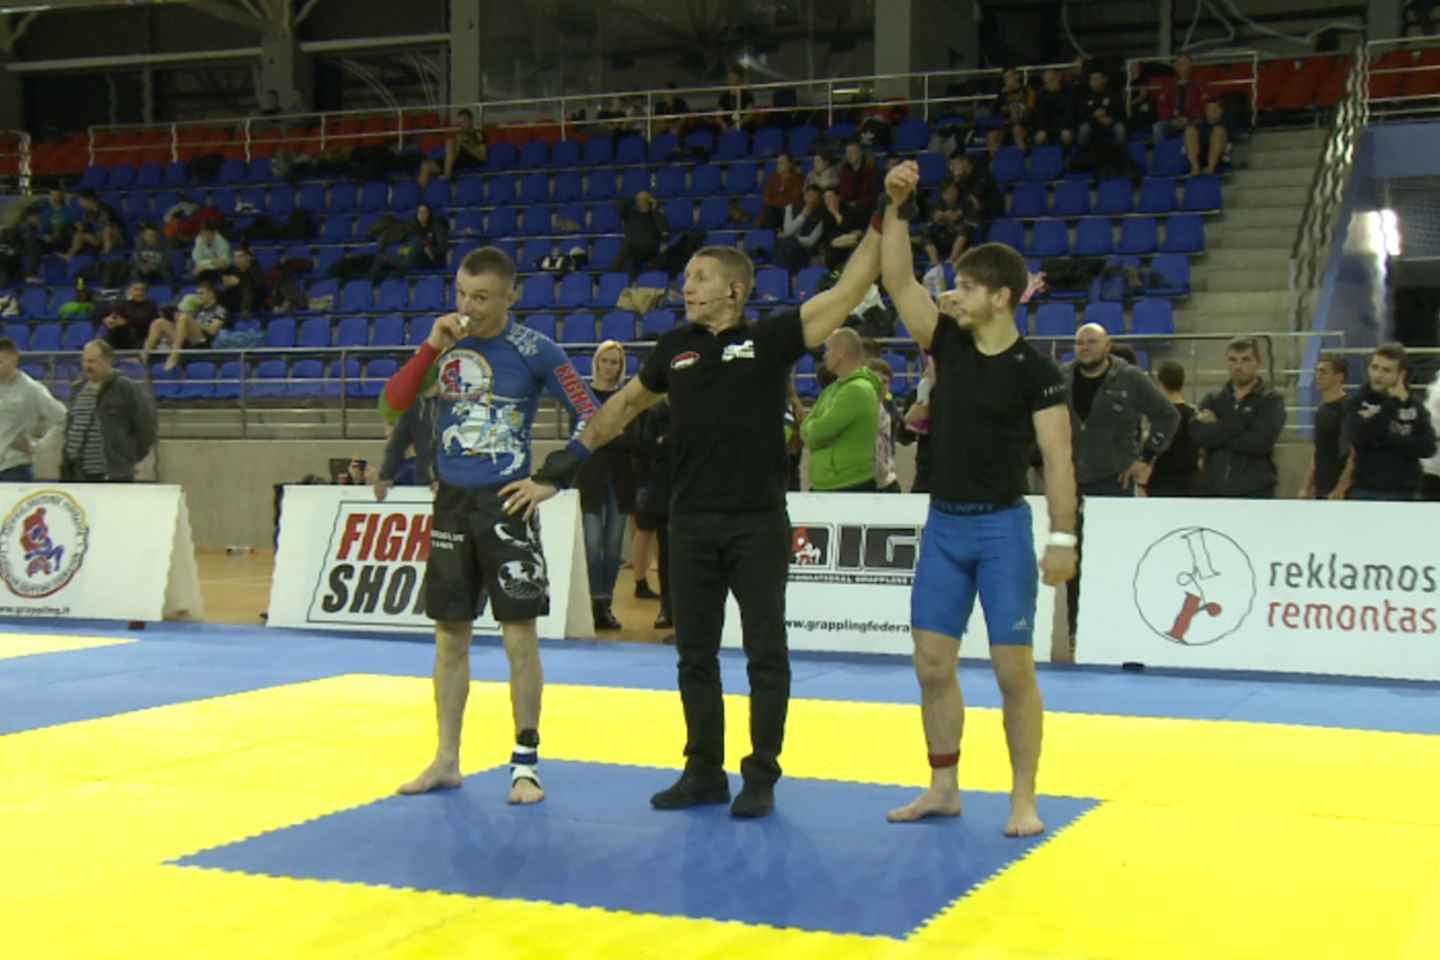  Lietuvos graplingo čempionate pasaulio čempionas liko antras.